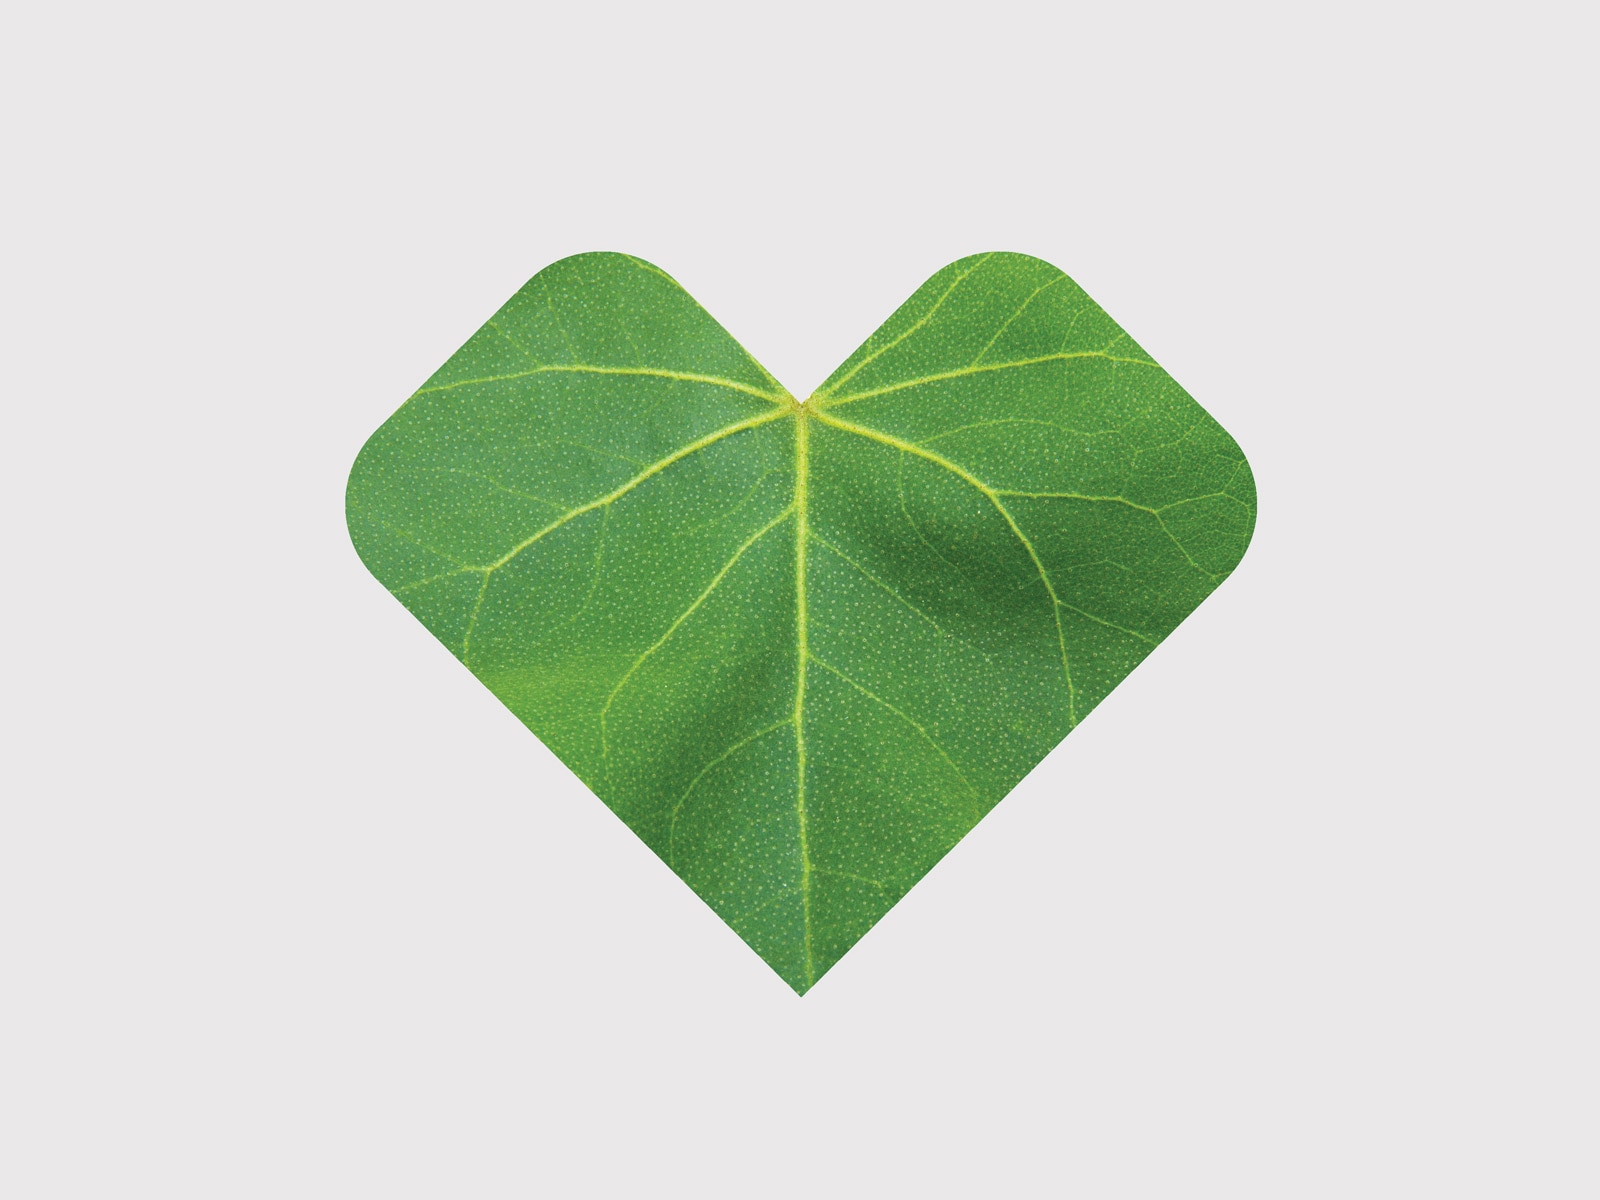 A heart-shaped leaf.